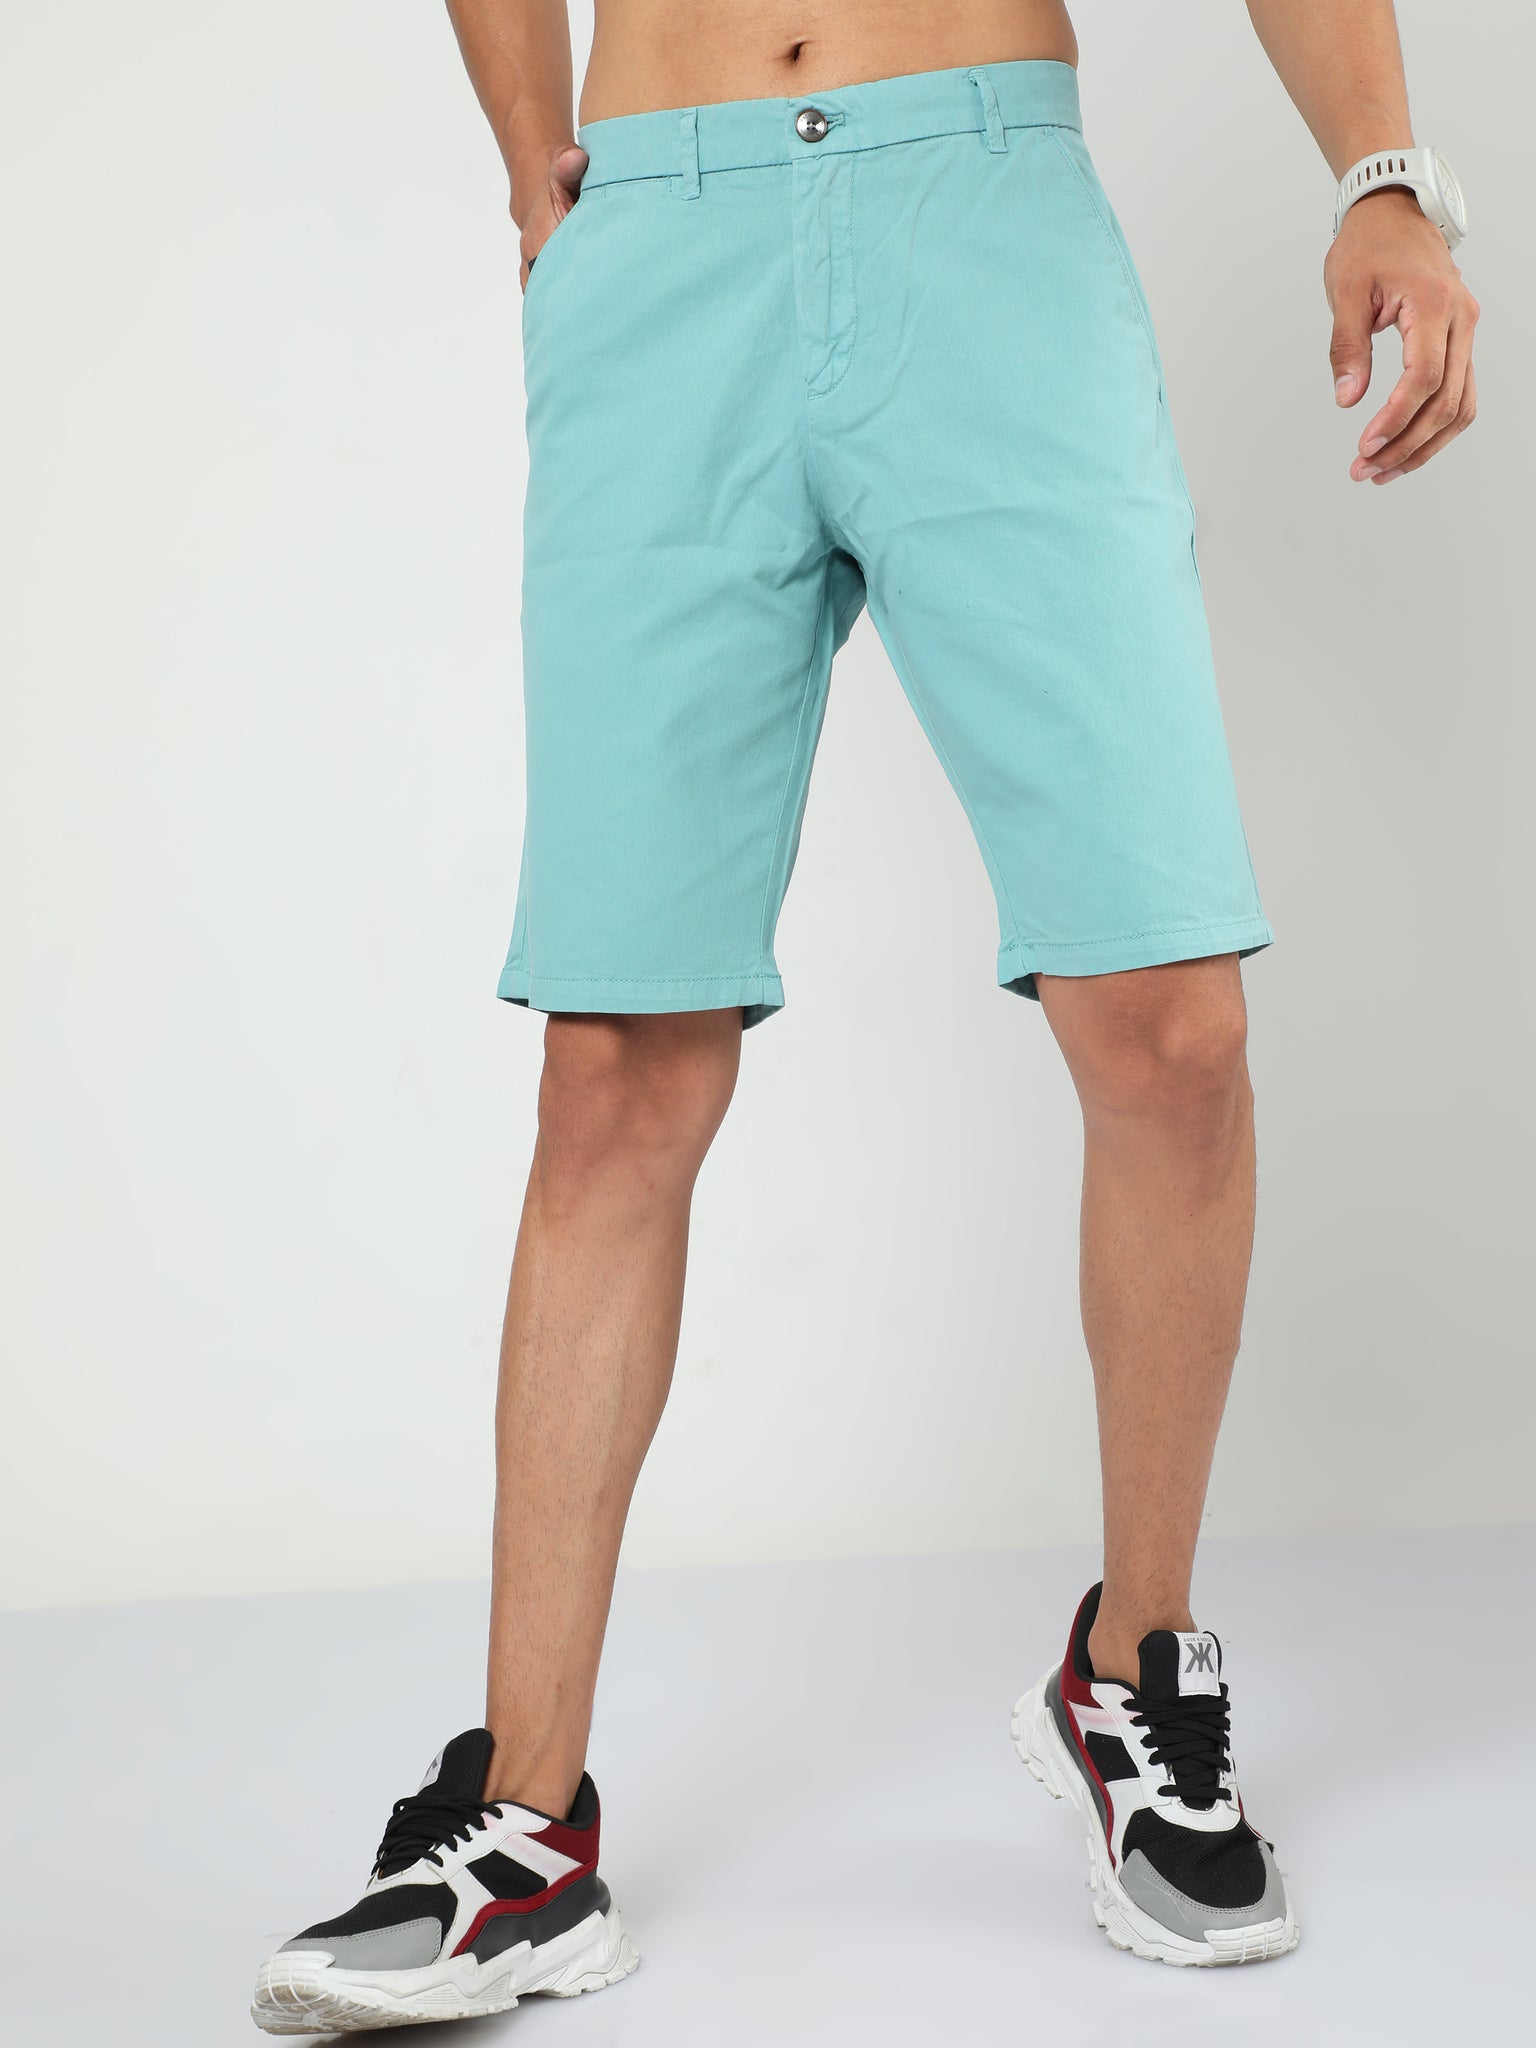 French Ocean Blue Shorts for Men